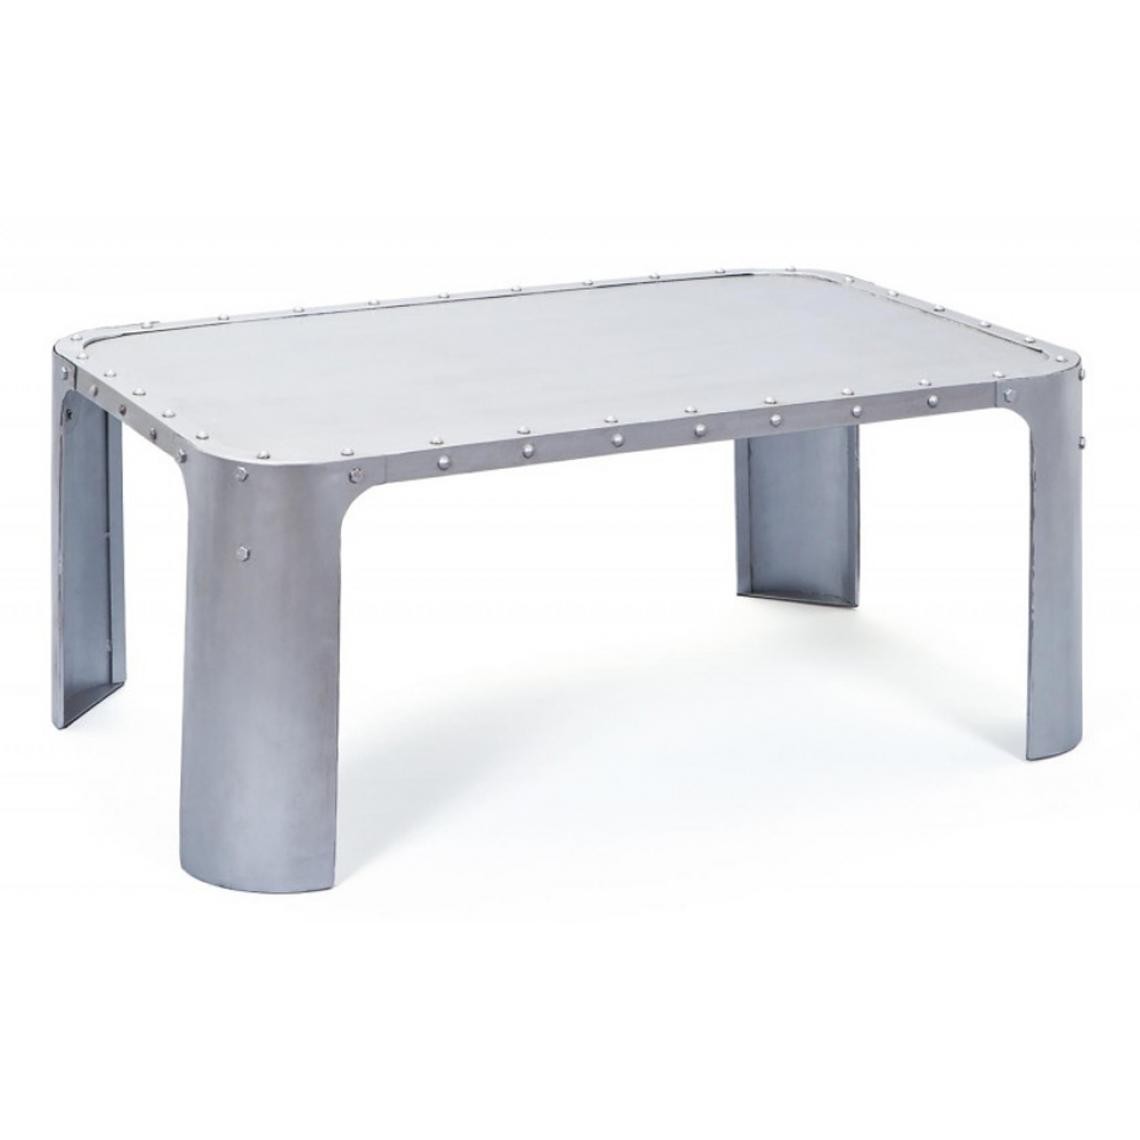 Pegane - Table basse coloris argent en métal, 110 x 70 x 45 cm - Tables basses